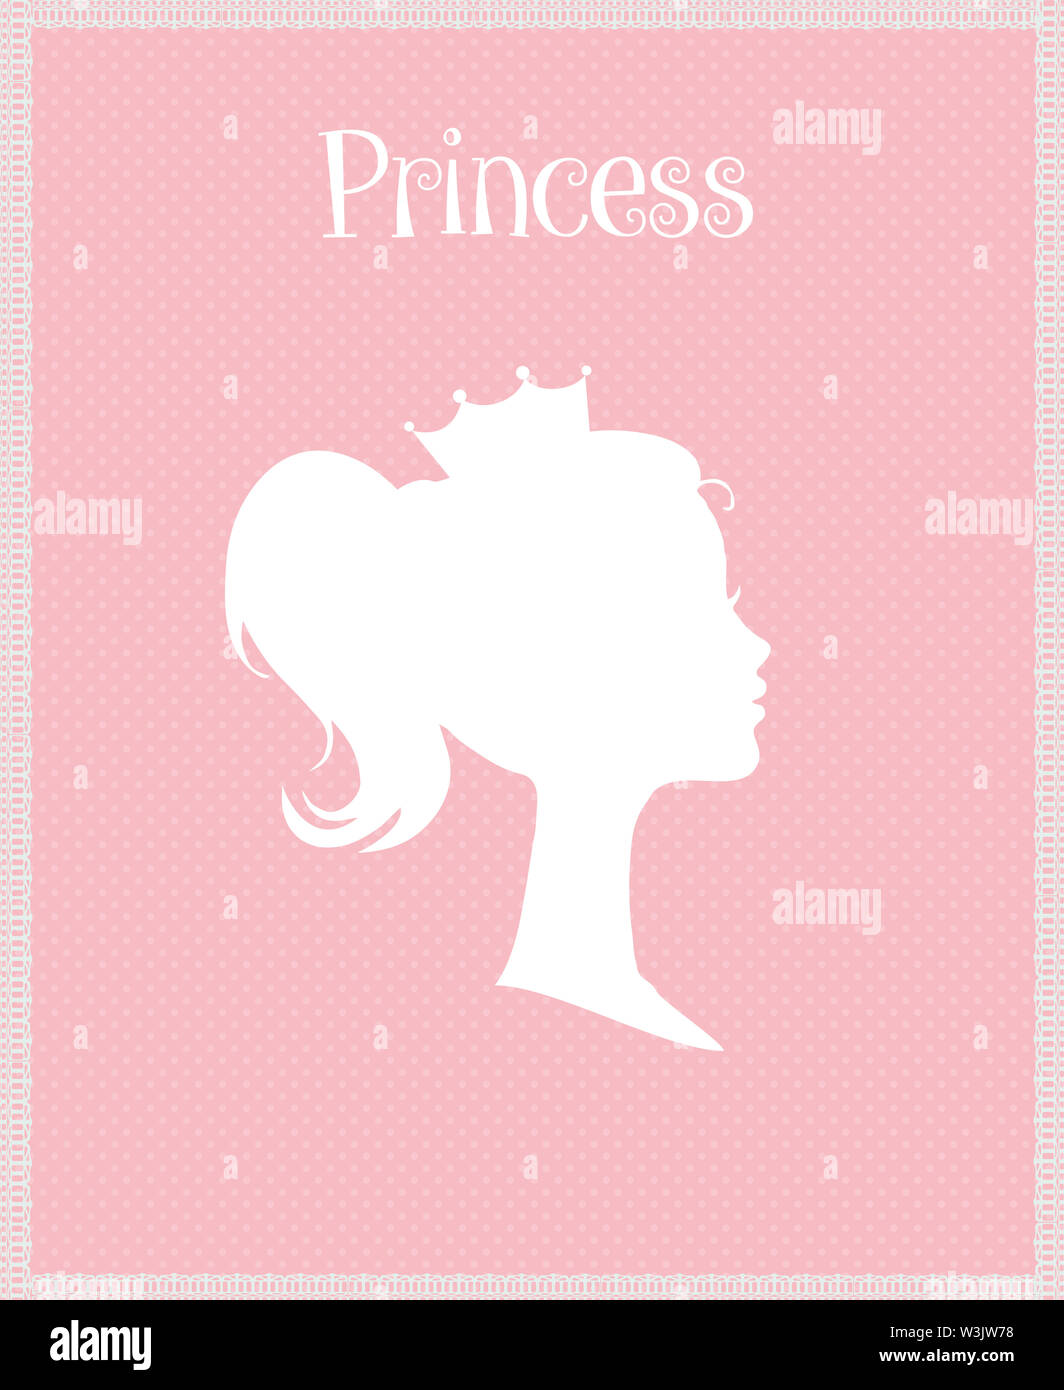 Prinzessin oder Königin Profil Silhouette mit Krone auf rosa Hintergrund mit Typografie Retro Grußkarte, viktorianischen Porträt der Königlichen Person nettes Mädchen ich Stockfoto